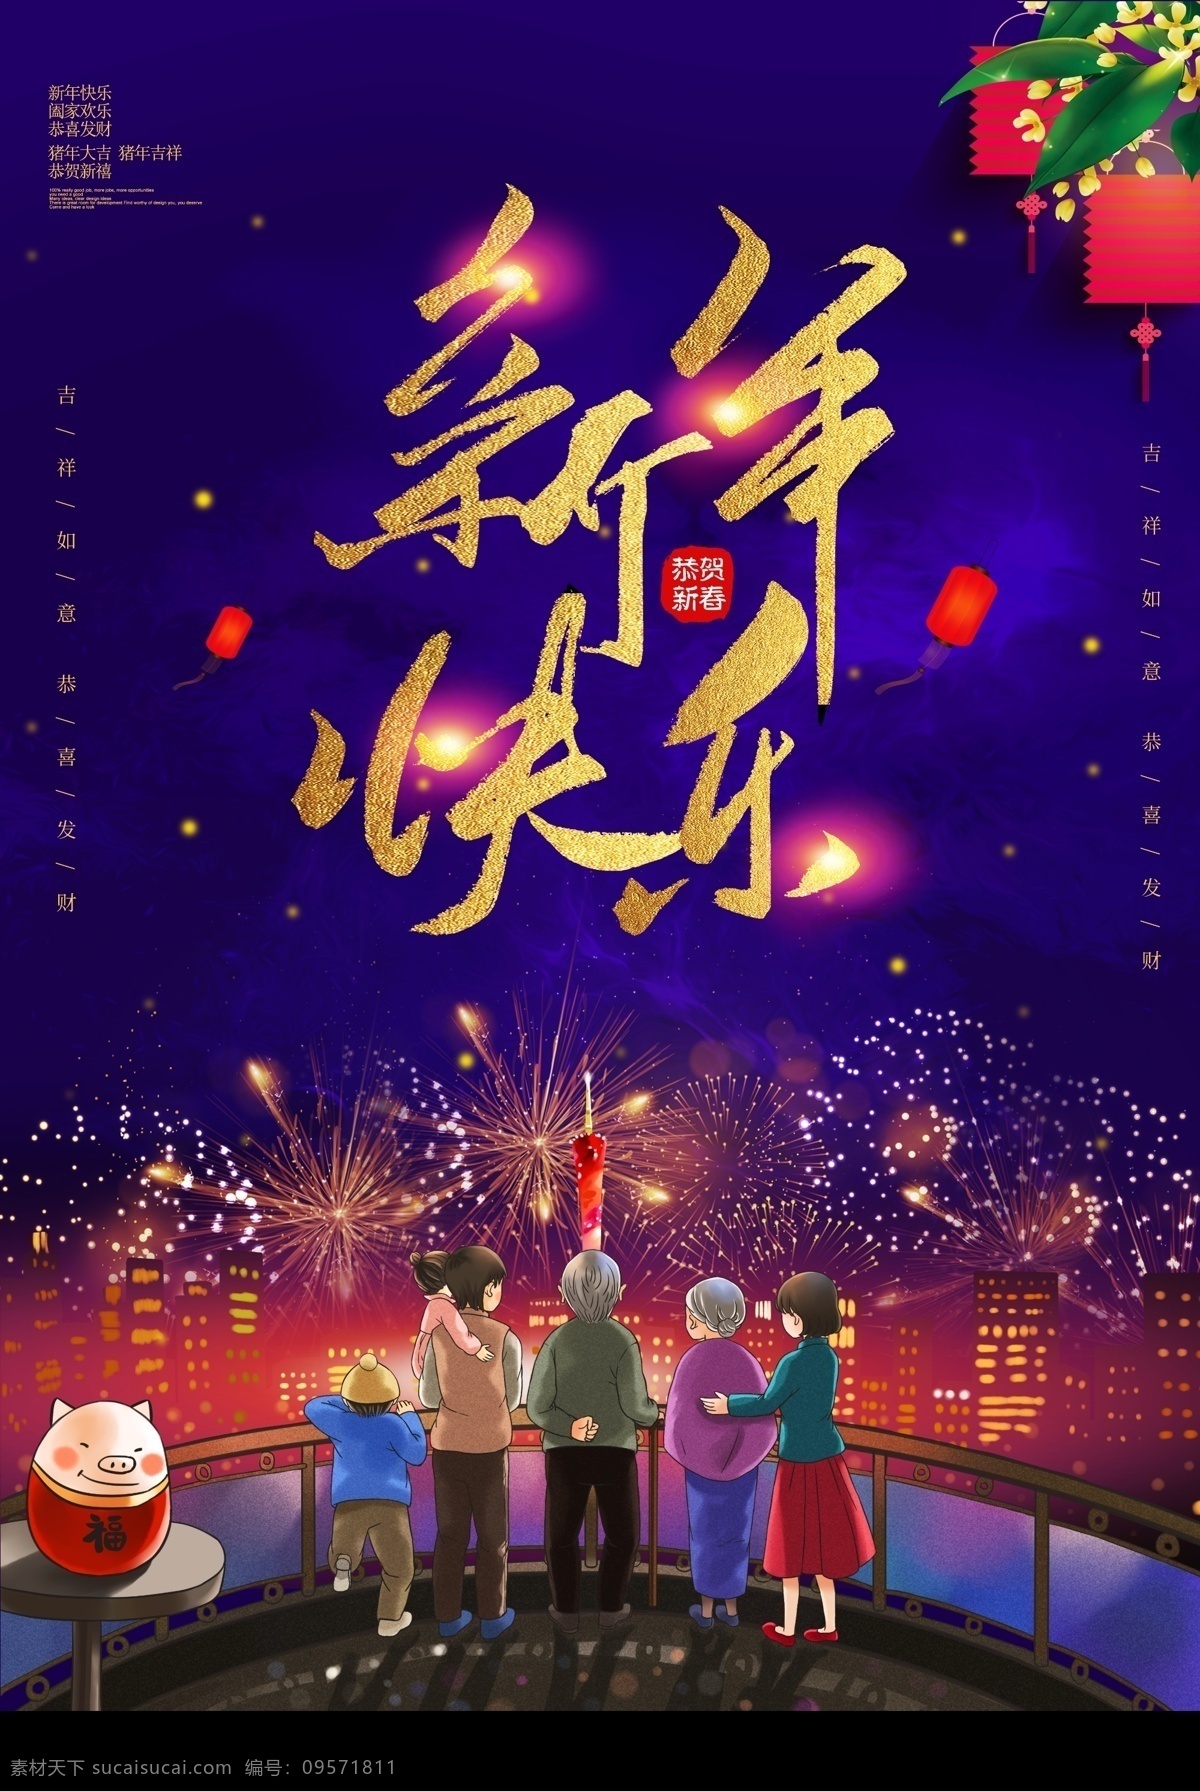 大气 唯美 新年 快乐 海报 新年海报 新年快乐 新春 春节 节日海报 一家人 幸福过年 欢天喜地 大年